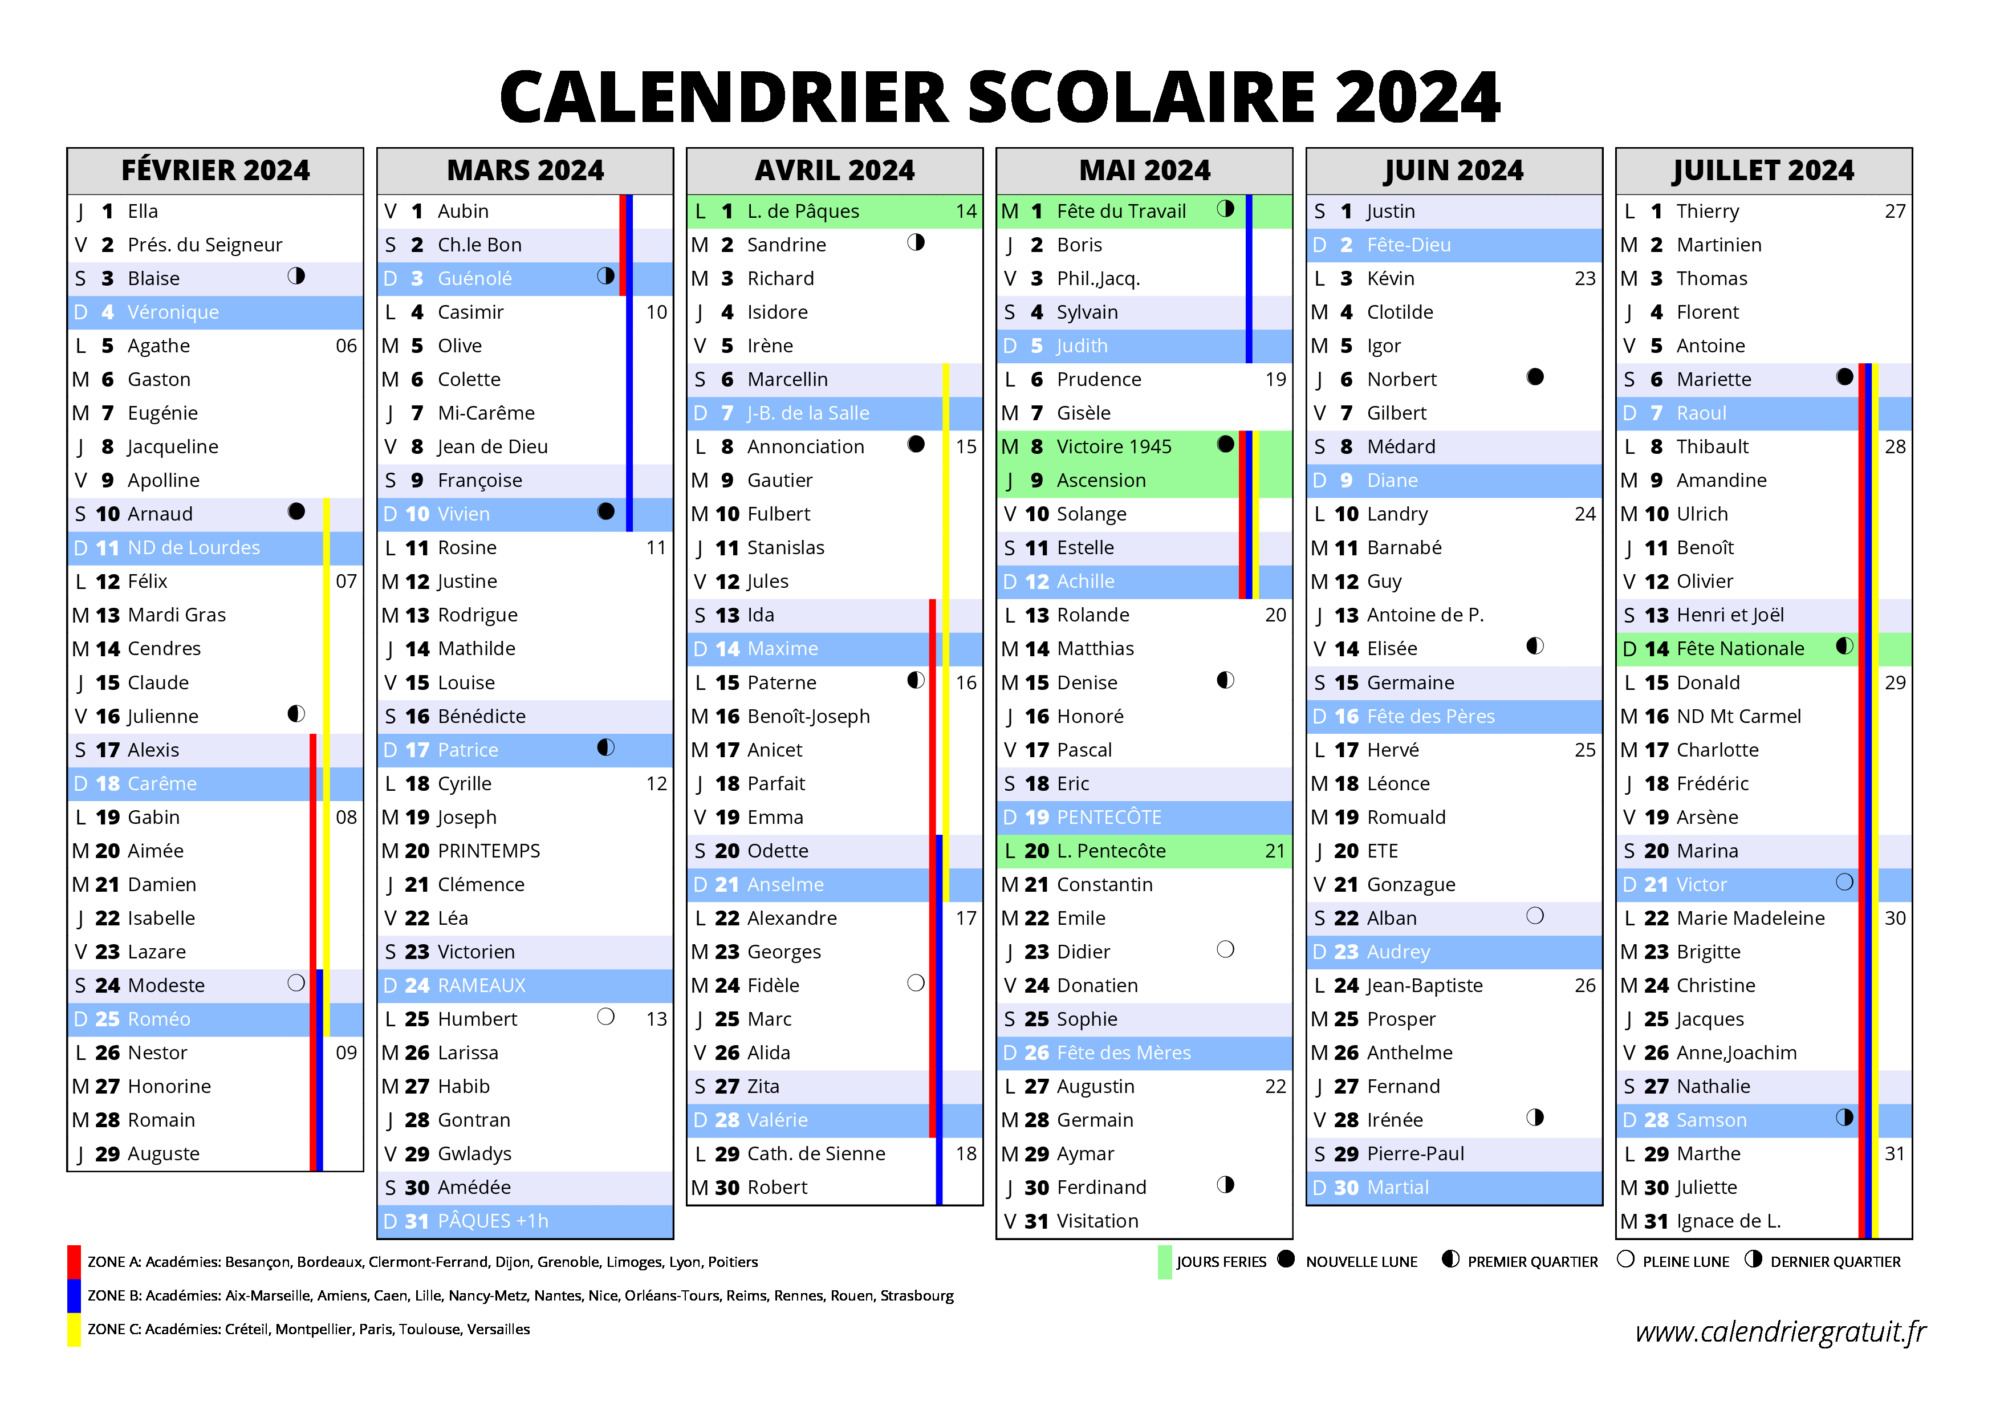 Calendrier scolaire 2024 consultez et imprimez le calendrier scolaire